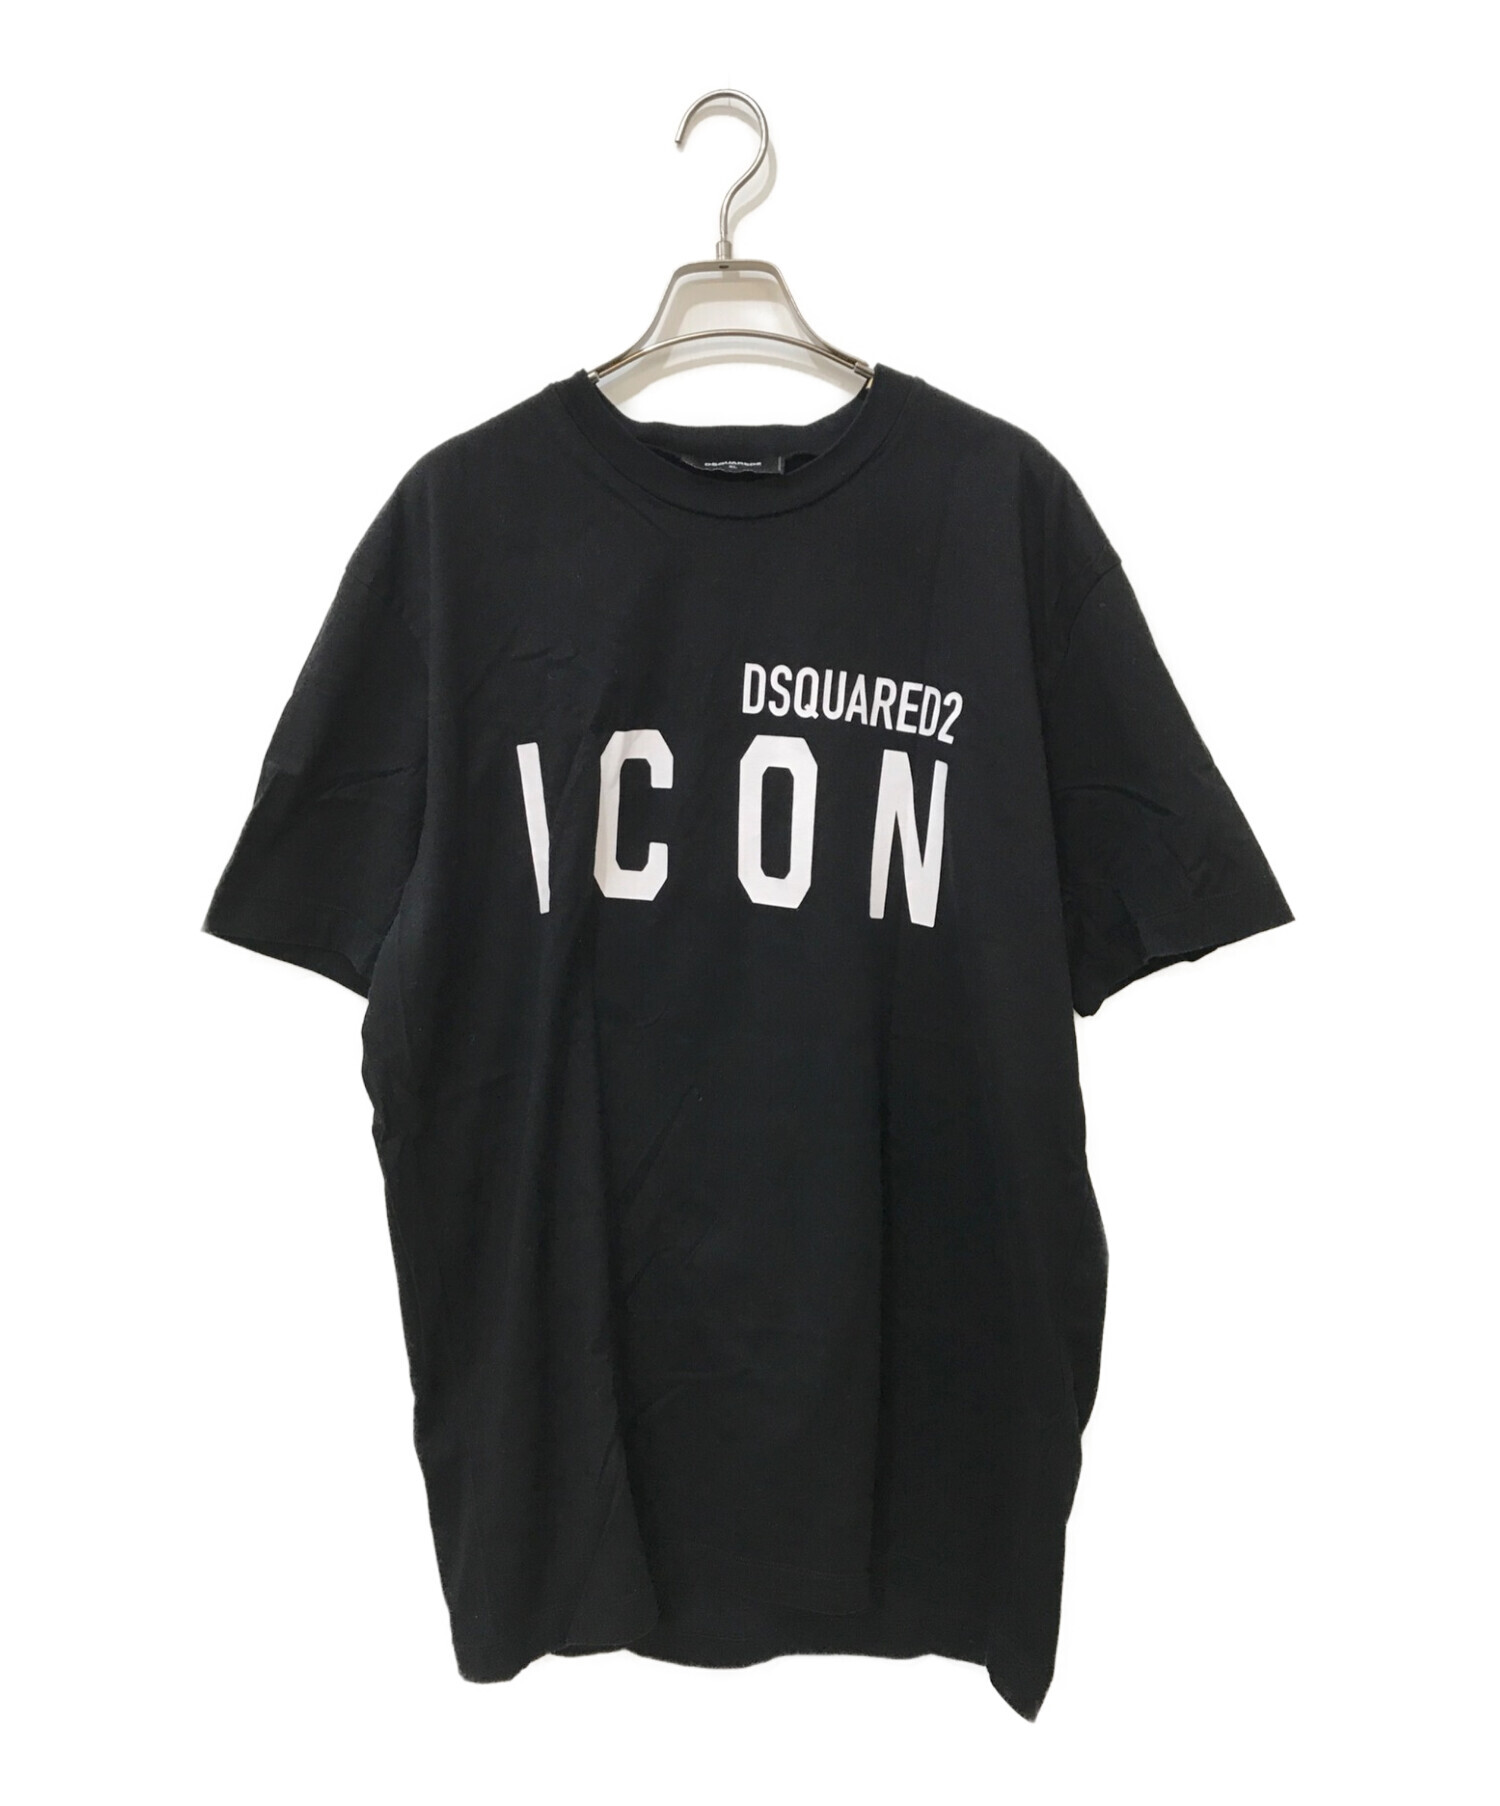 中古・古着通販】DSQUARED2 (ディースクエアード) ICON ロゴTシャツ